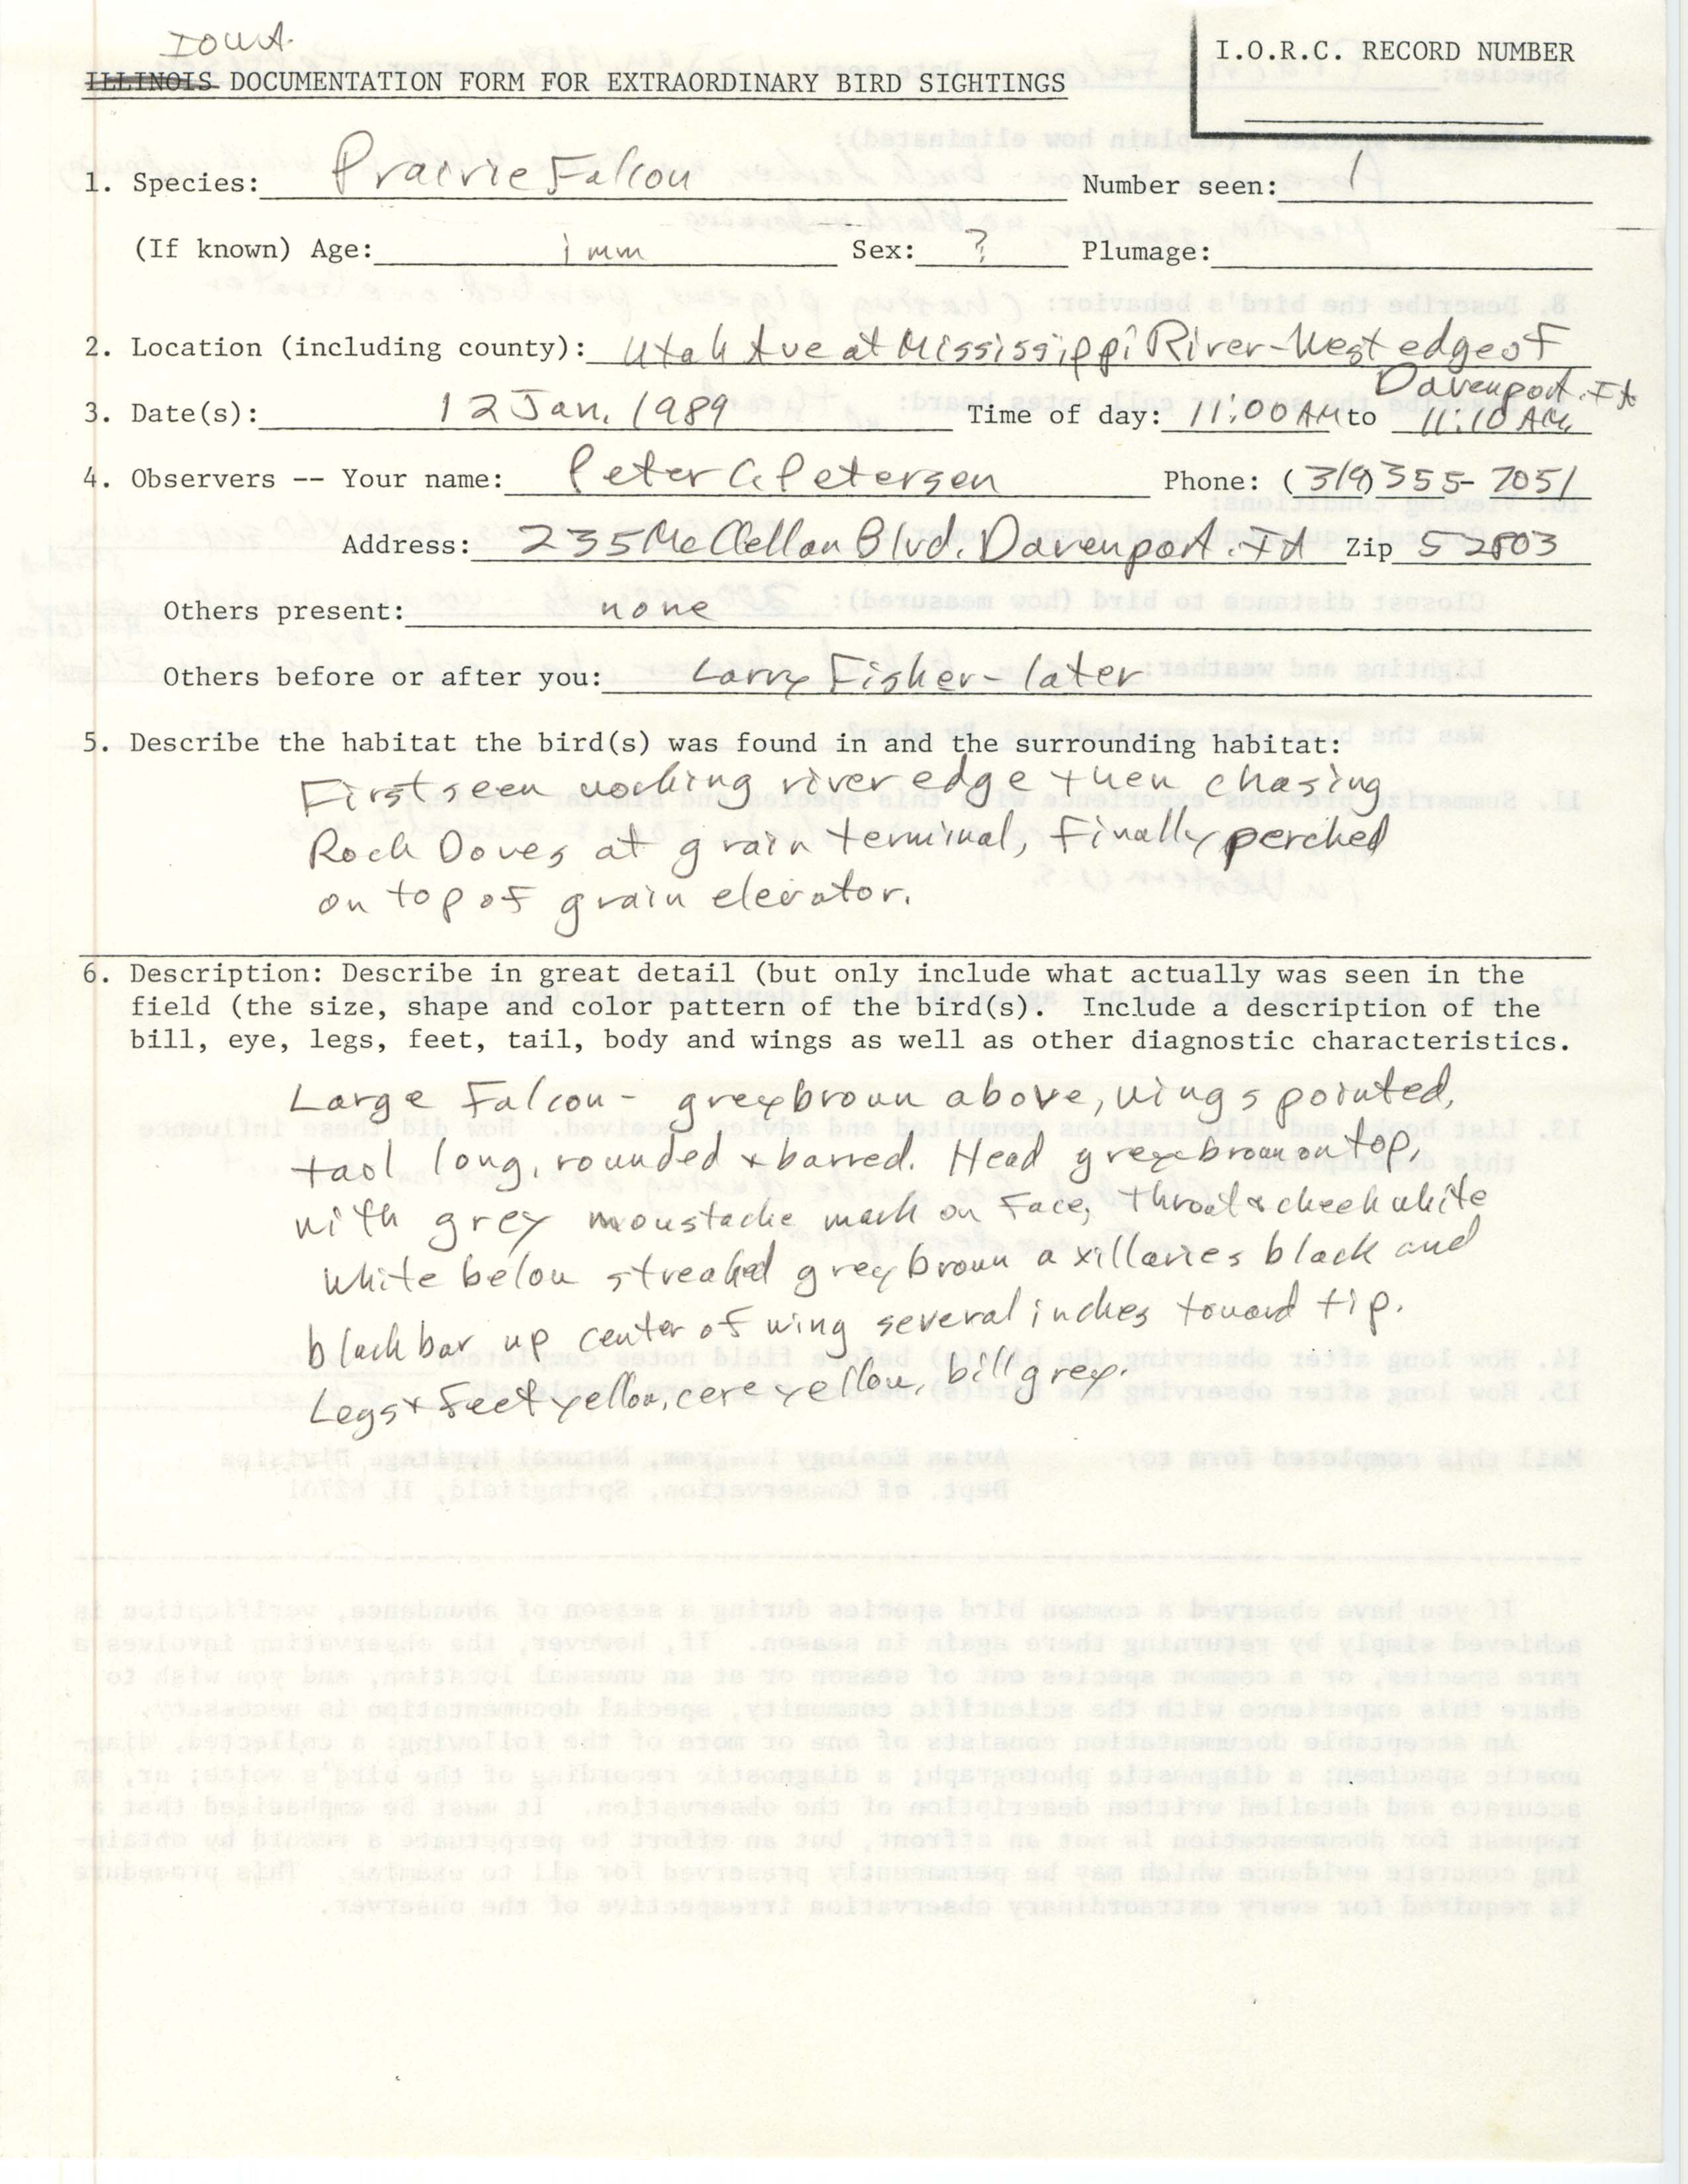 Rare bird documentation form for Prairie Falcon at Davenport, 1989